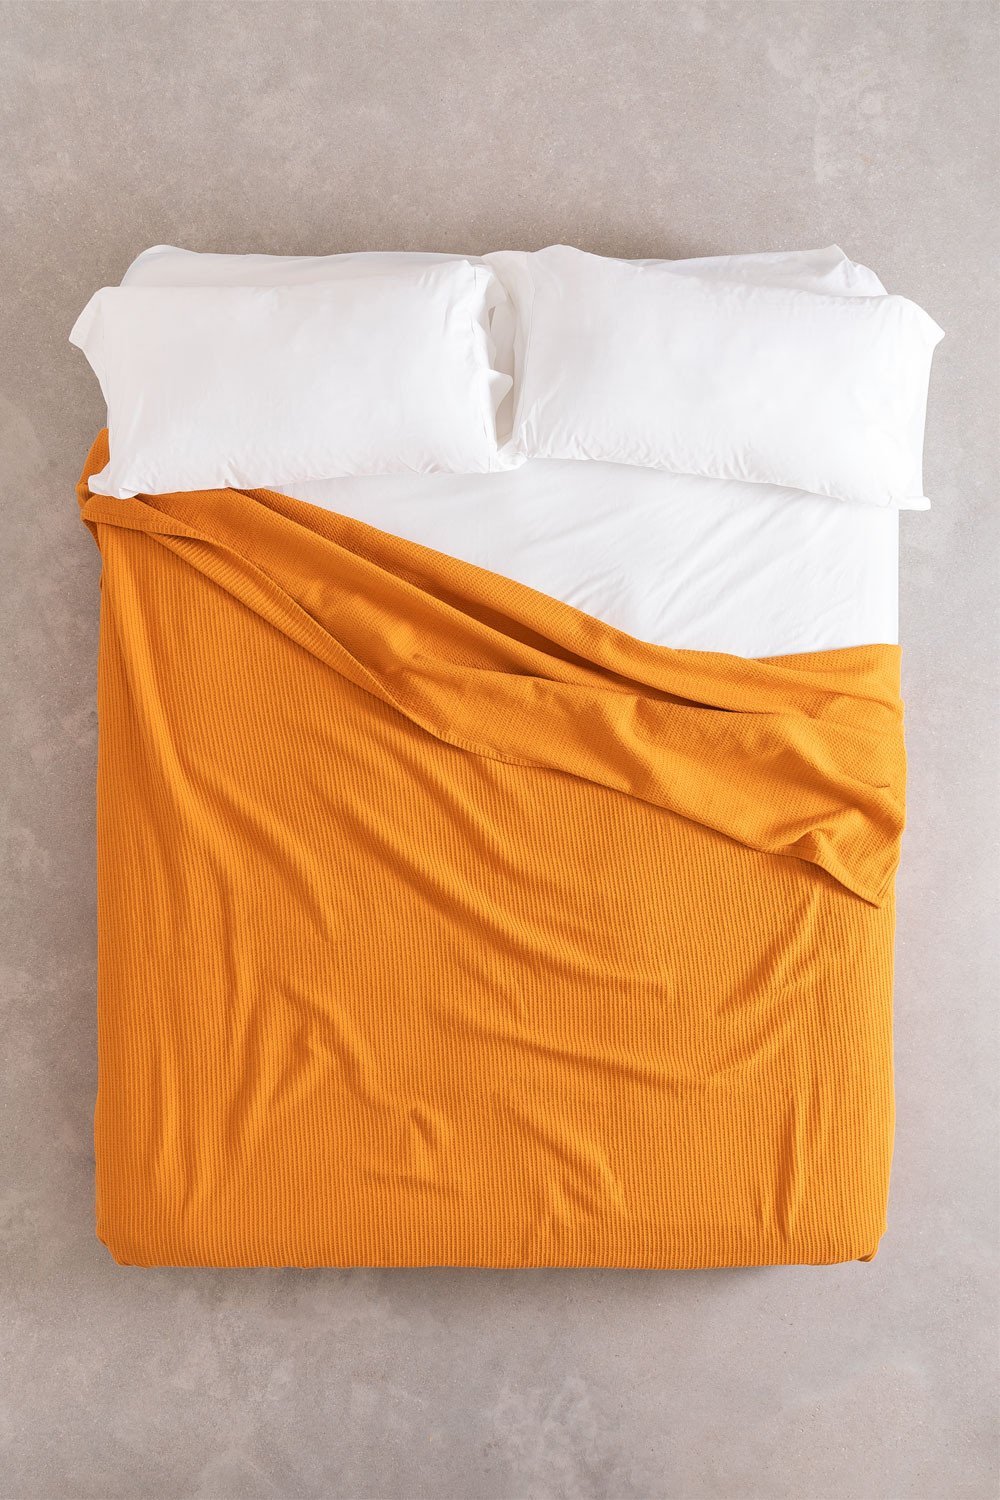 Multifunctionele deken van wafelkatoen (243x223 cm) Bimba, galerij beeld 1